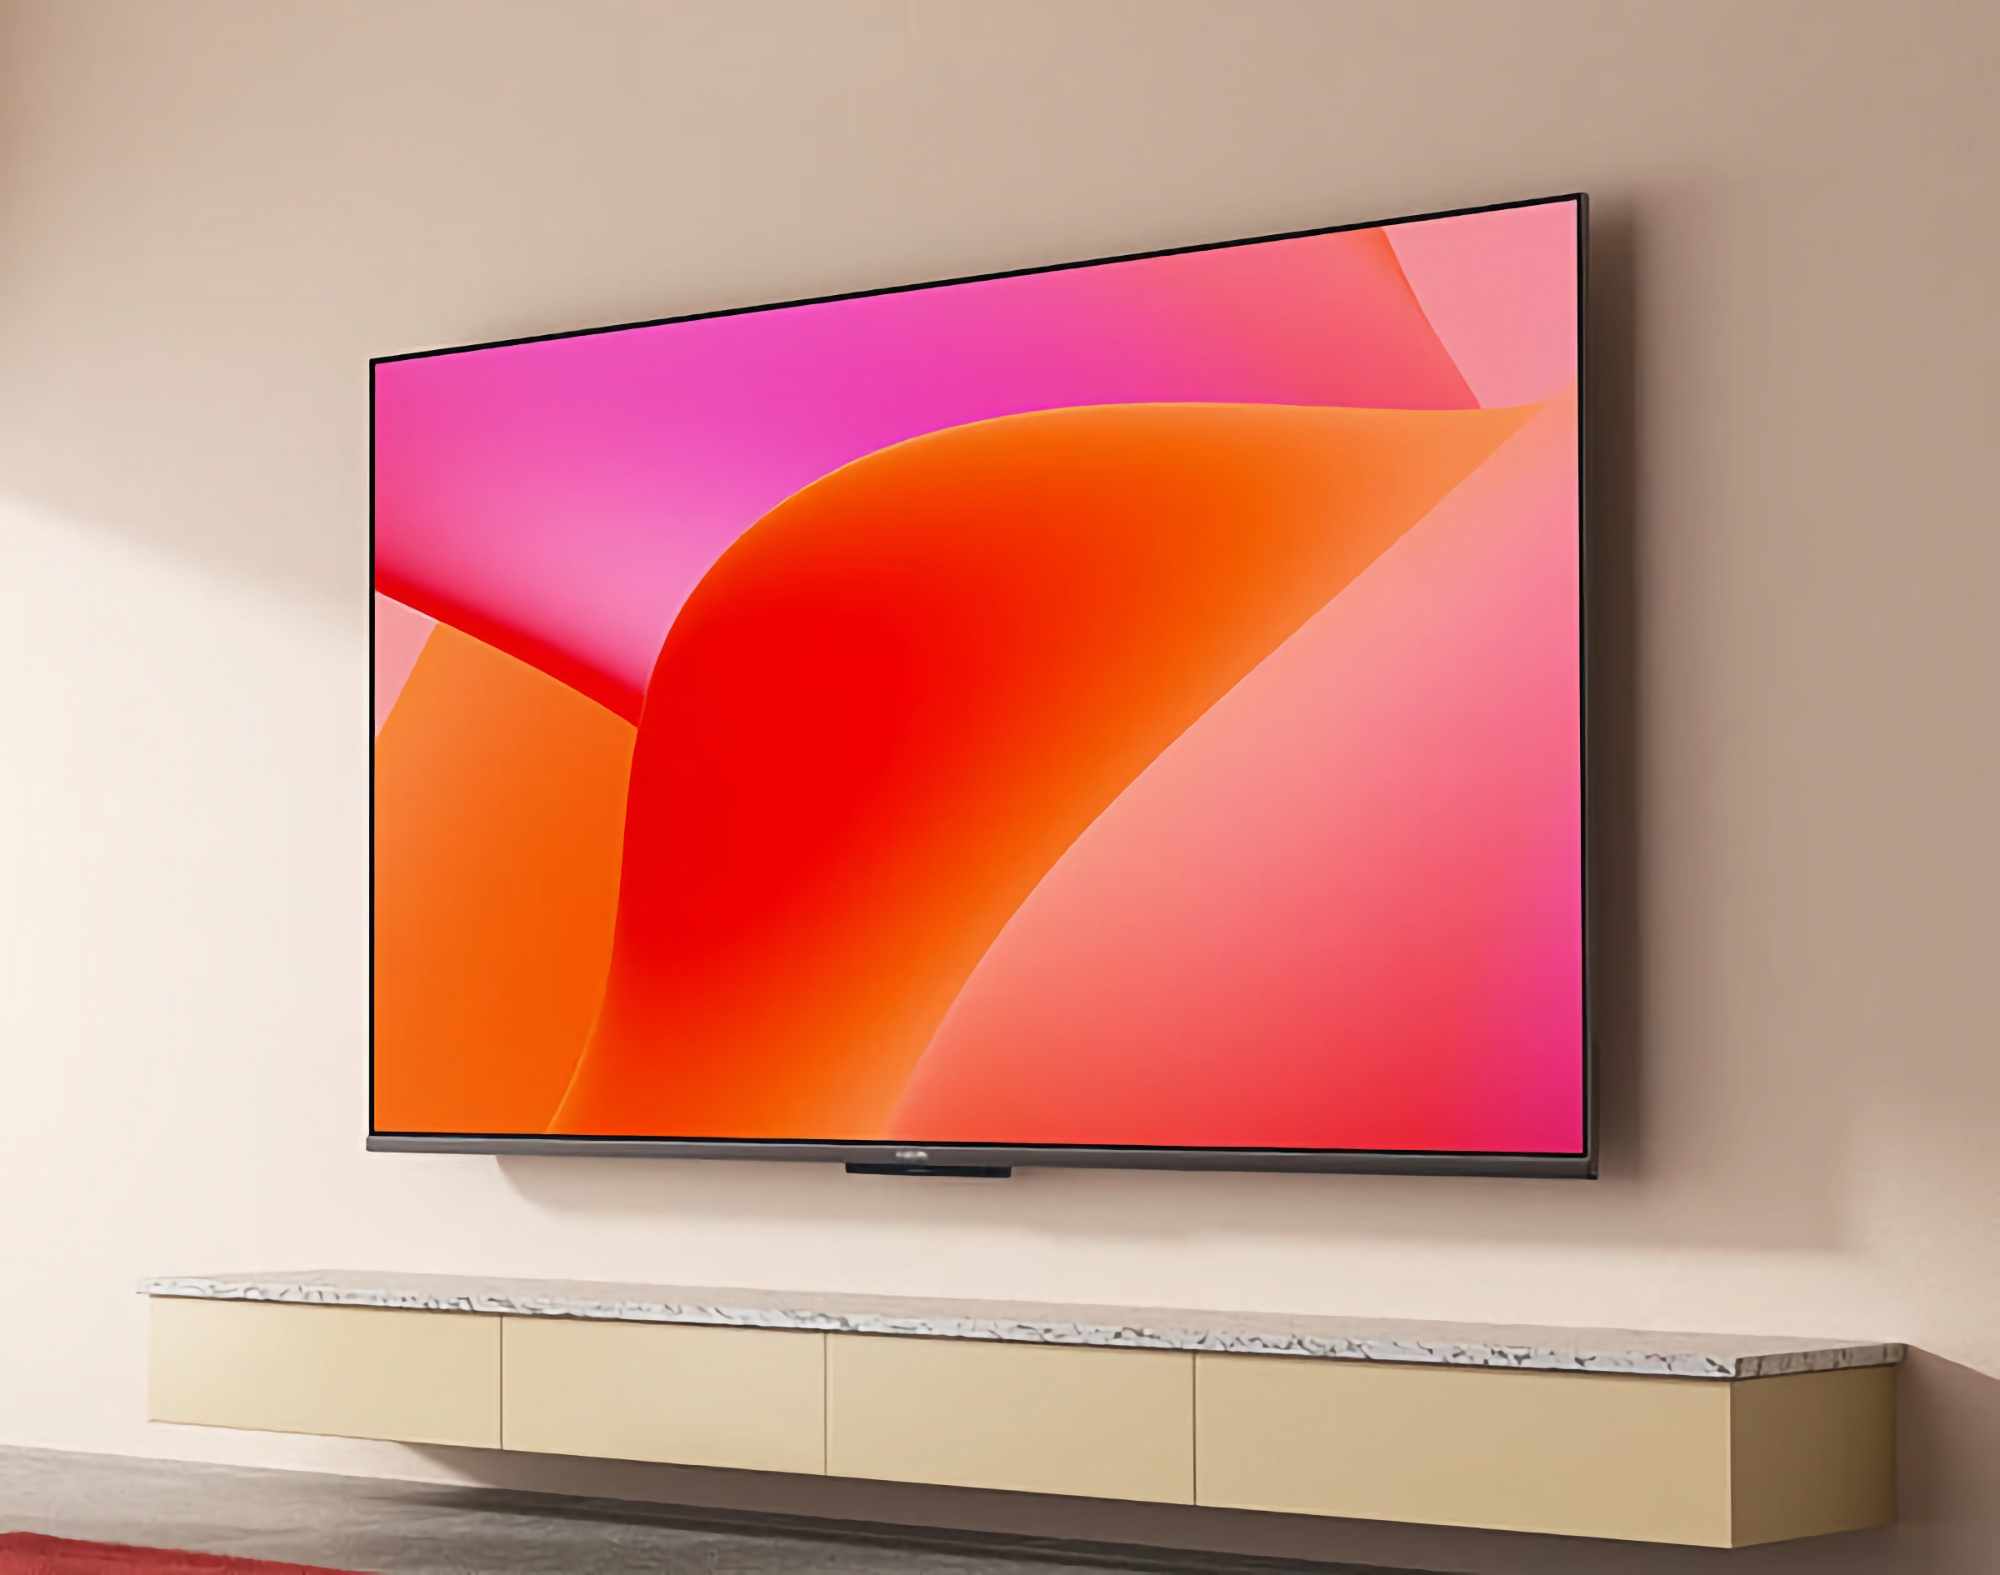 Xiaomi zaprezentowało telewizory smart TV A55, A65, A70 i A75 z ekranami LCD 4K.